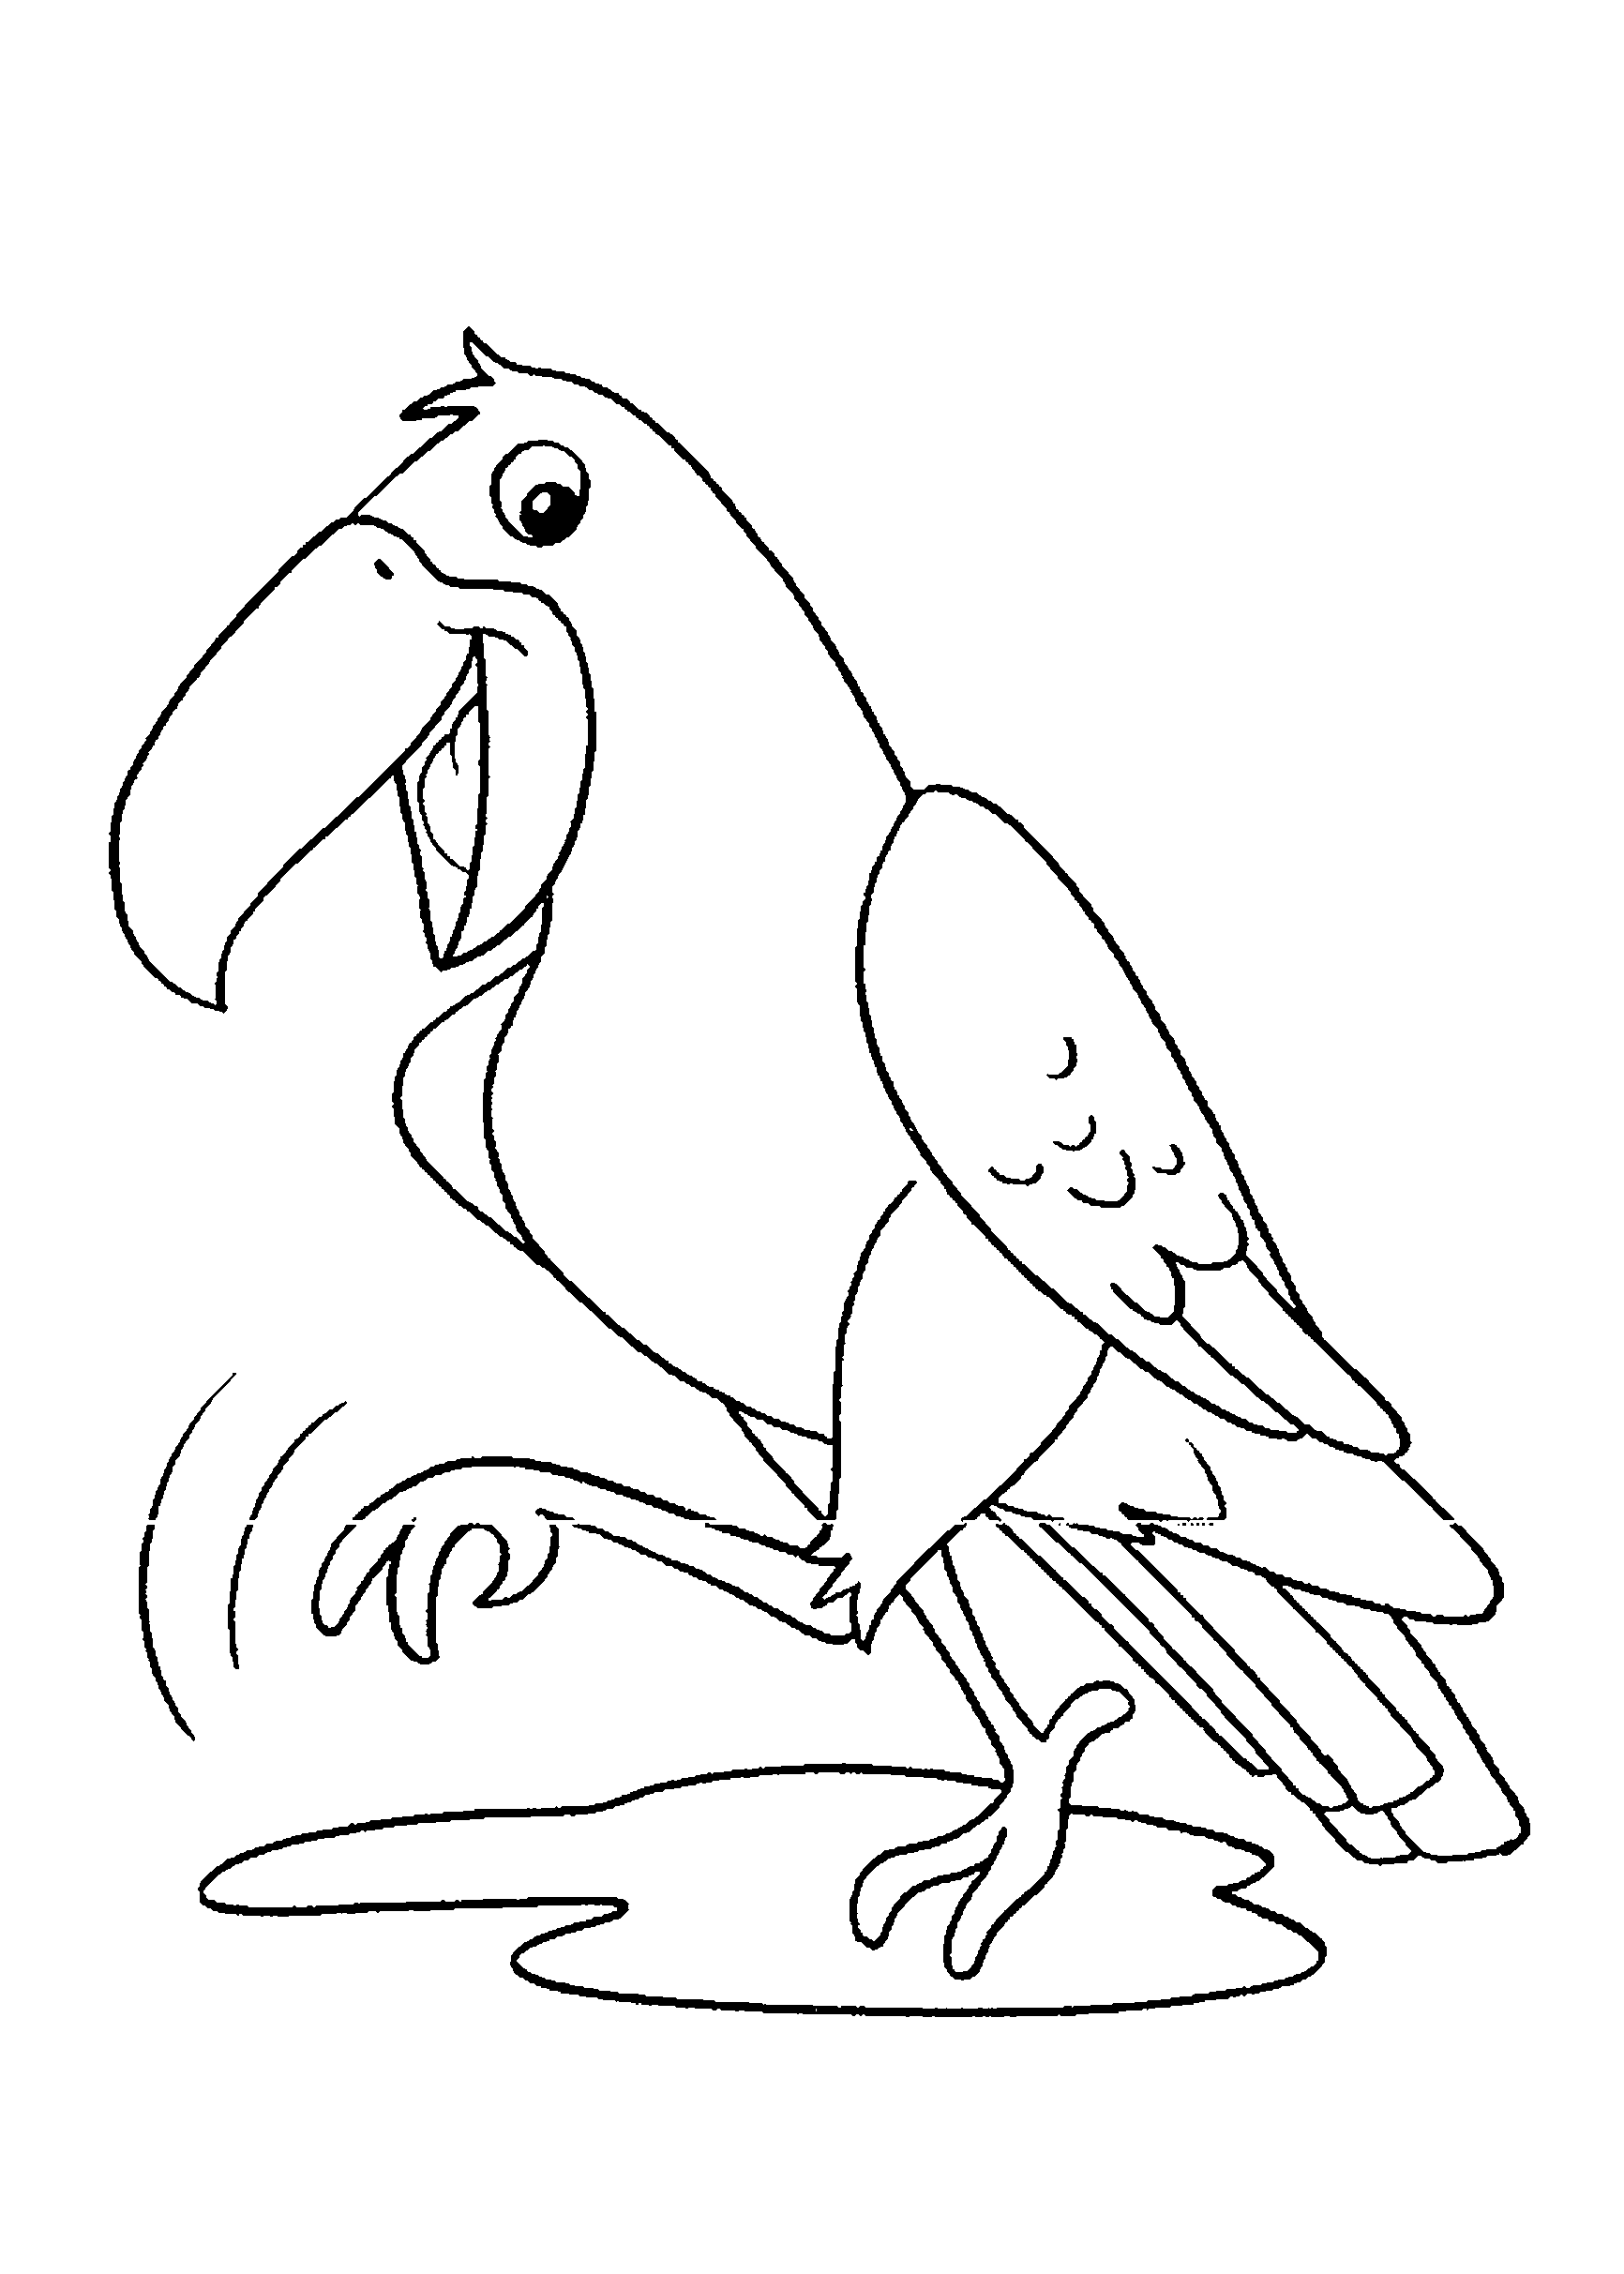 Desenho de tucano